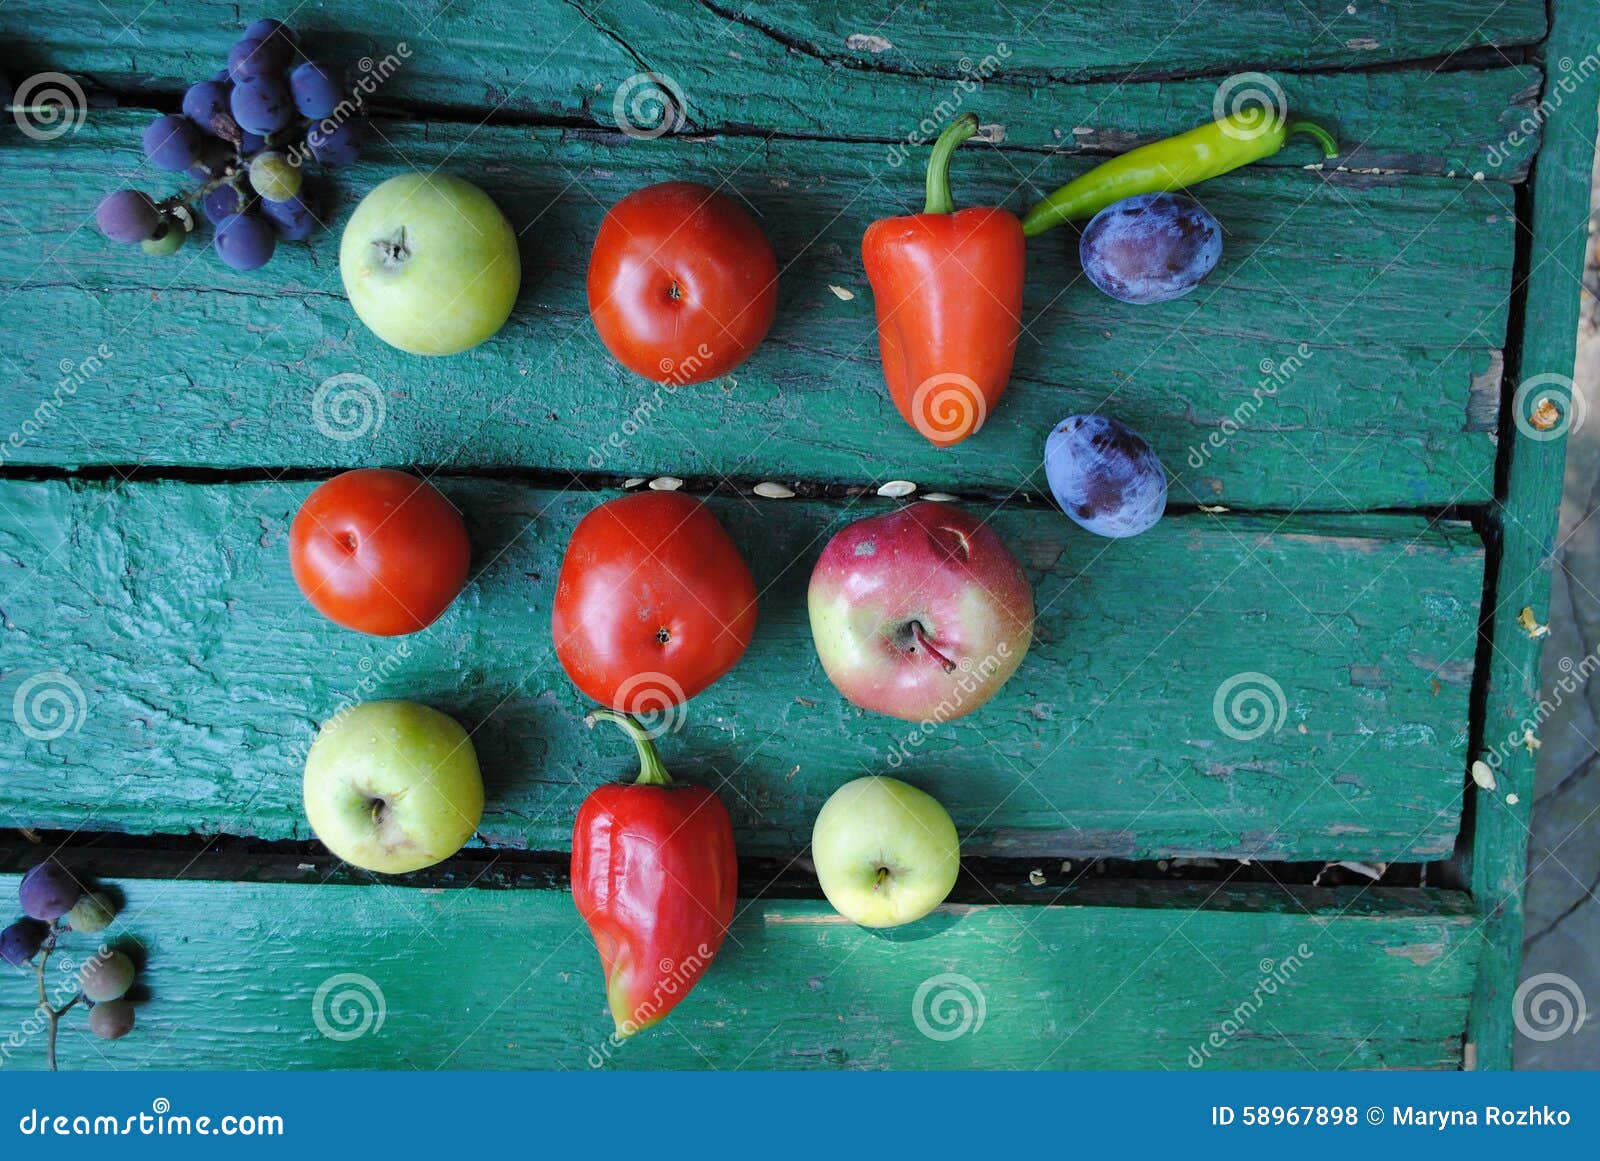 果菜类 库存图片. 图片 包括有 饮食, 莴苣, 胡椒, 草莓, 巴马科, 蕃茄, 红色, 春天, 健康 - 11155775